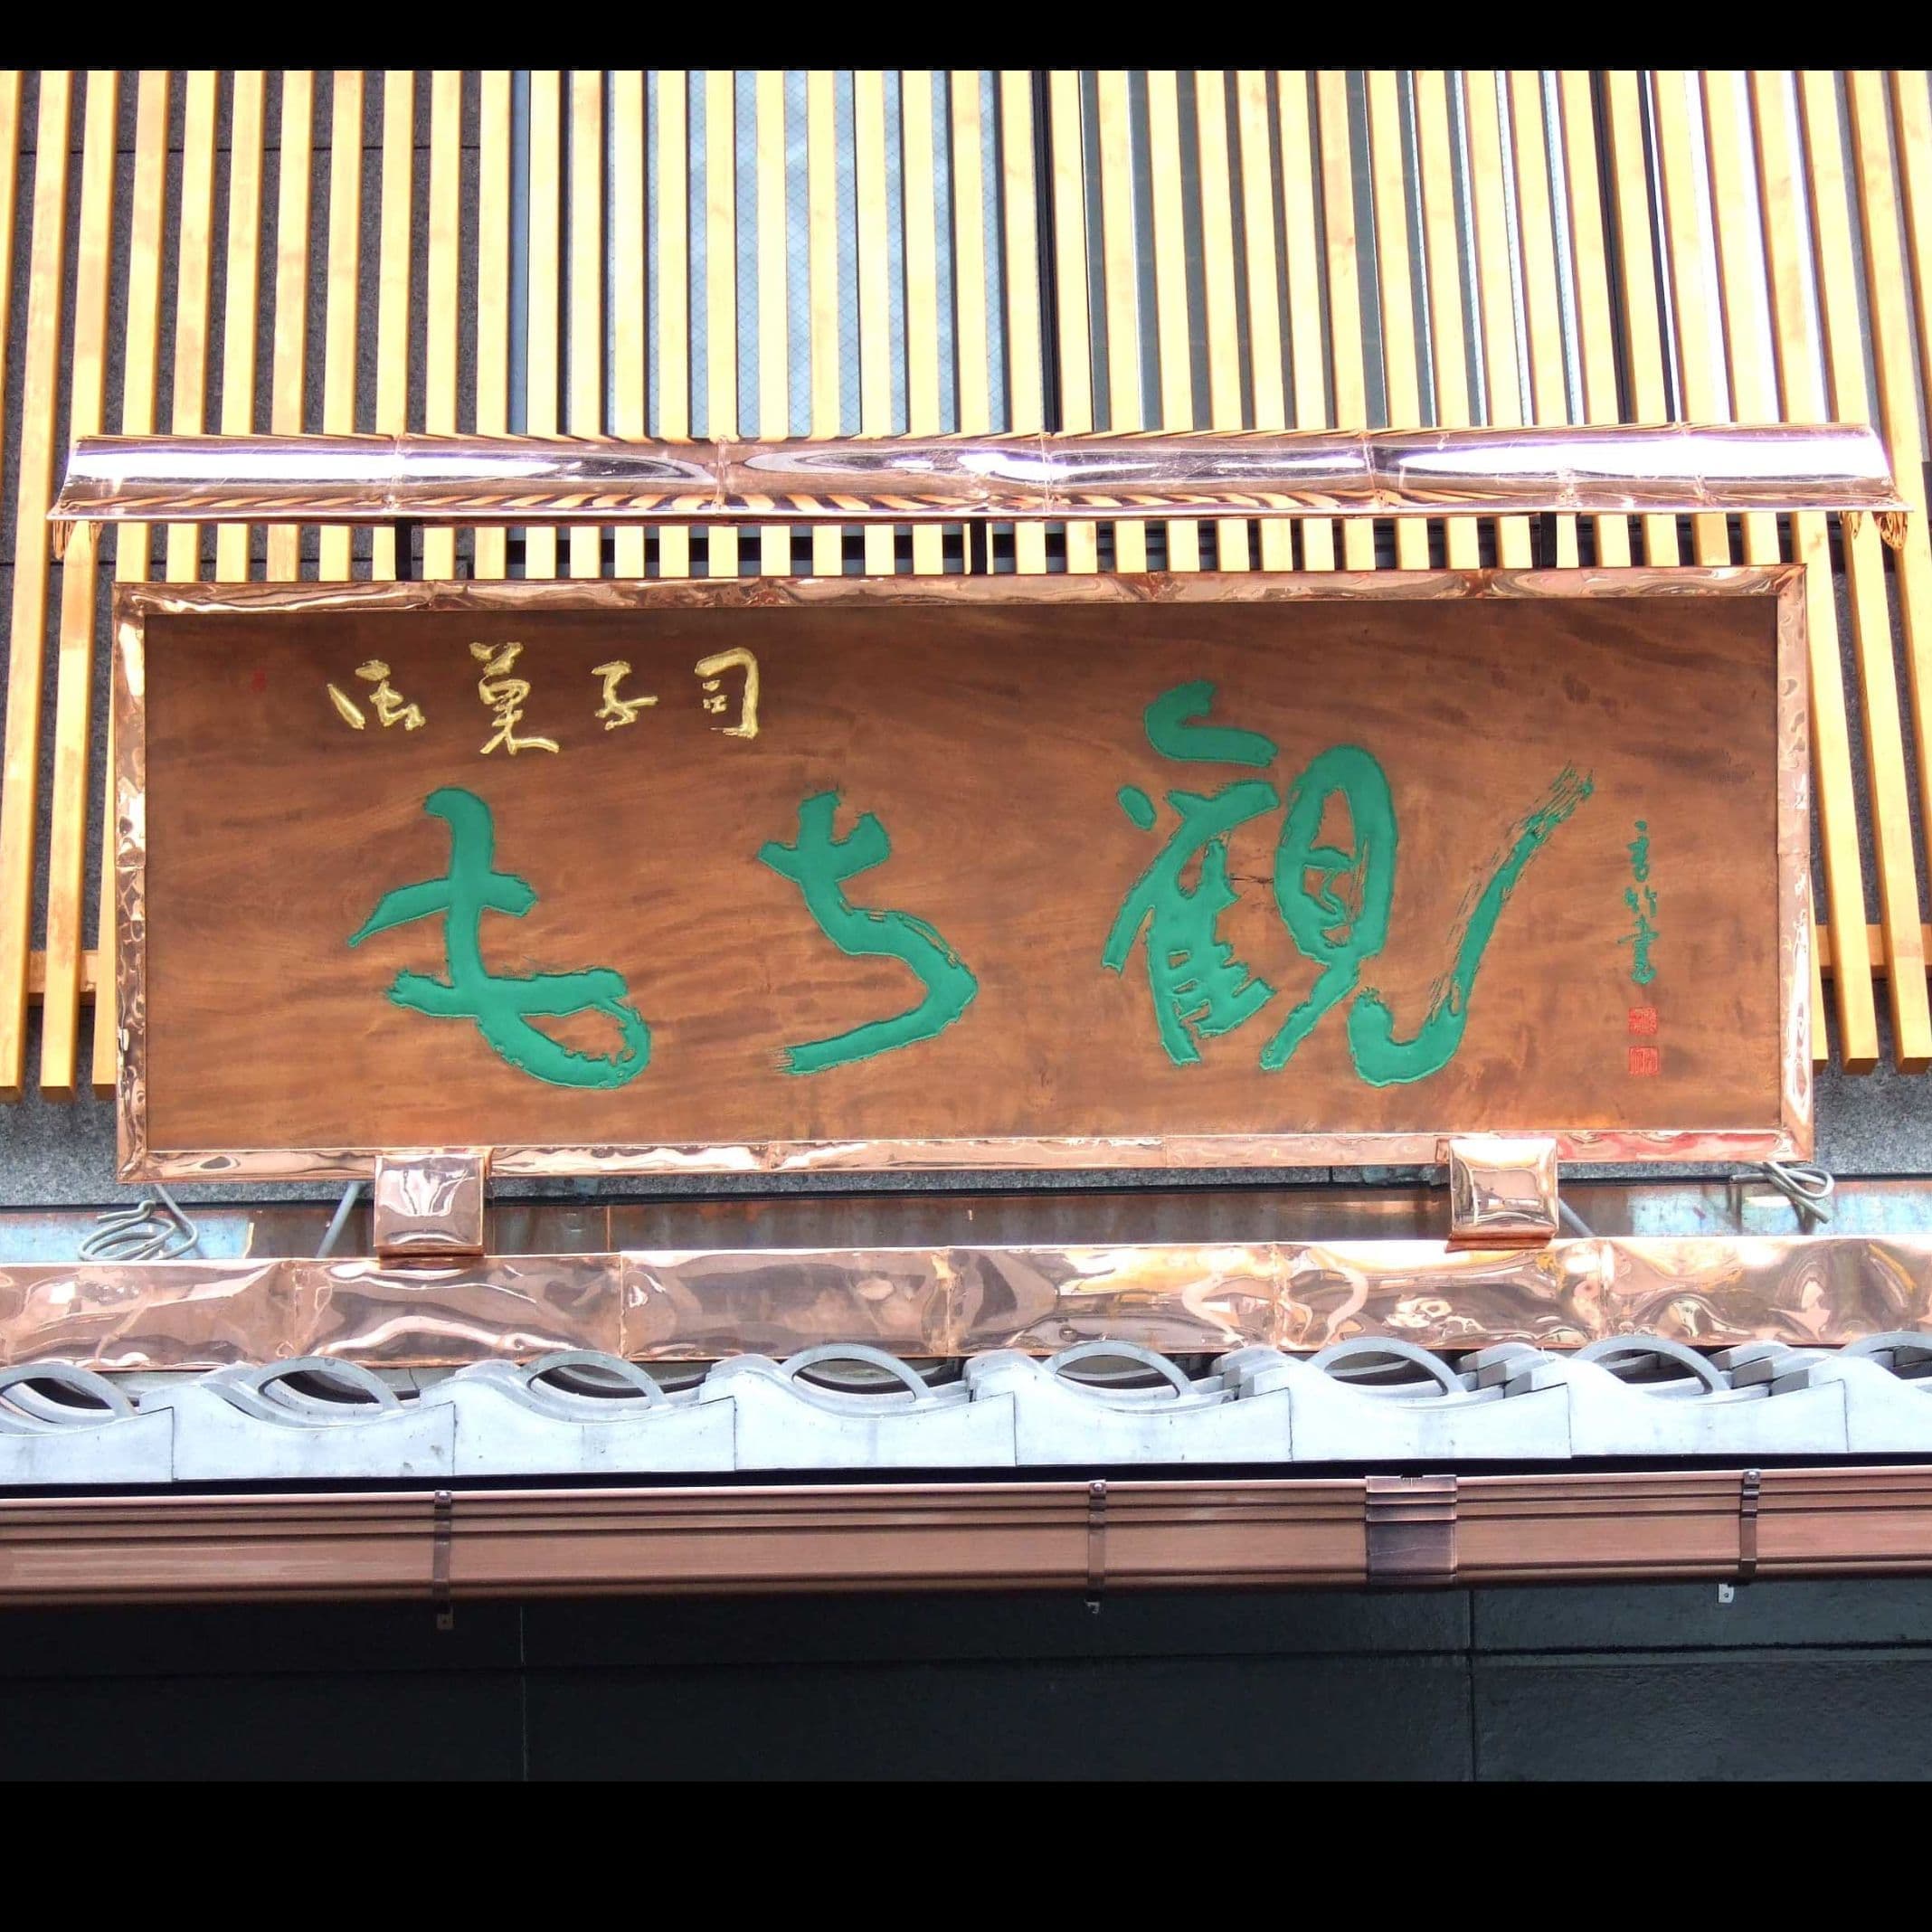 銅板がきれいな木の看板、文字は彫ってあり緑青と金箔